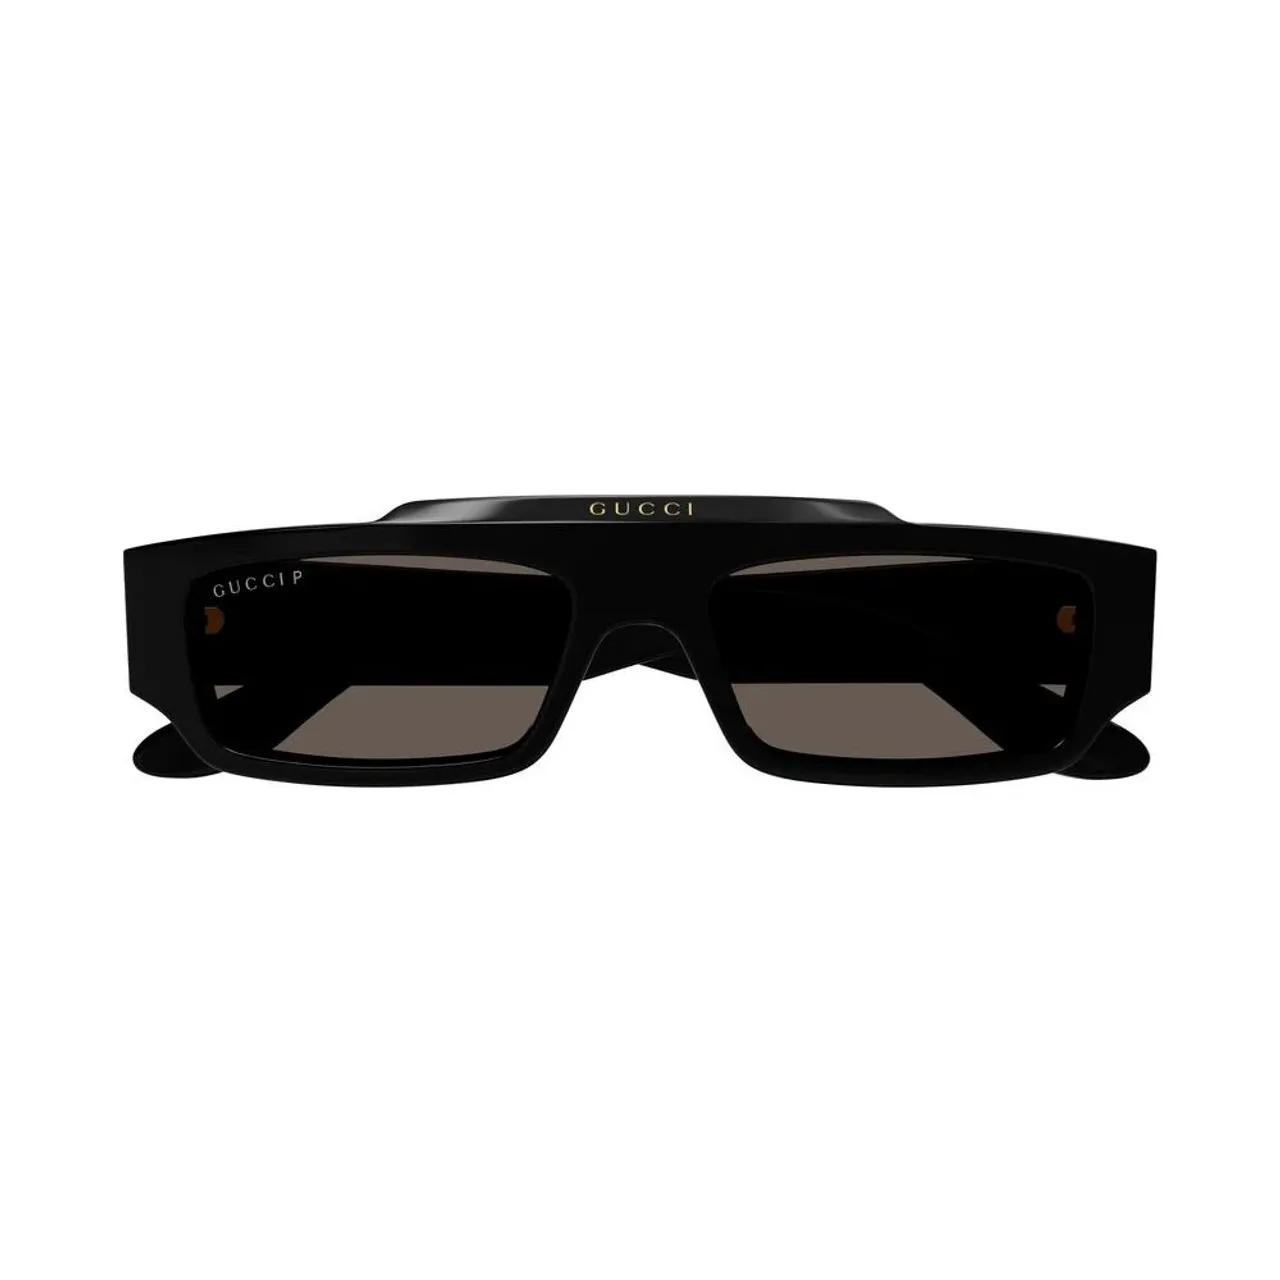 Stylische Sonnenbrille in Grau/Braun,Schwarze/Graue Sonnenbrille Gucci